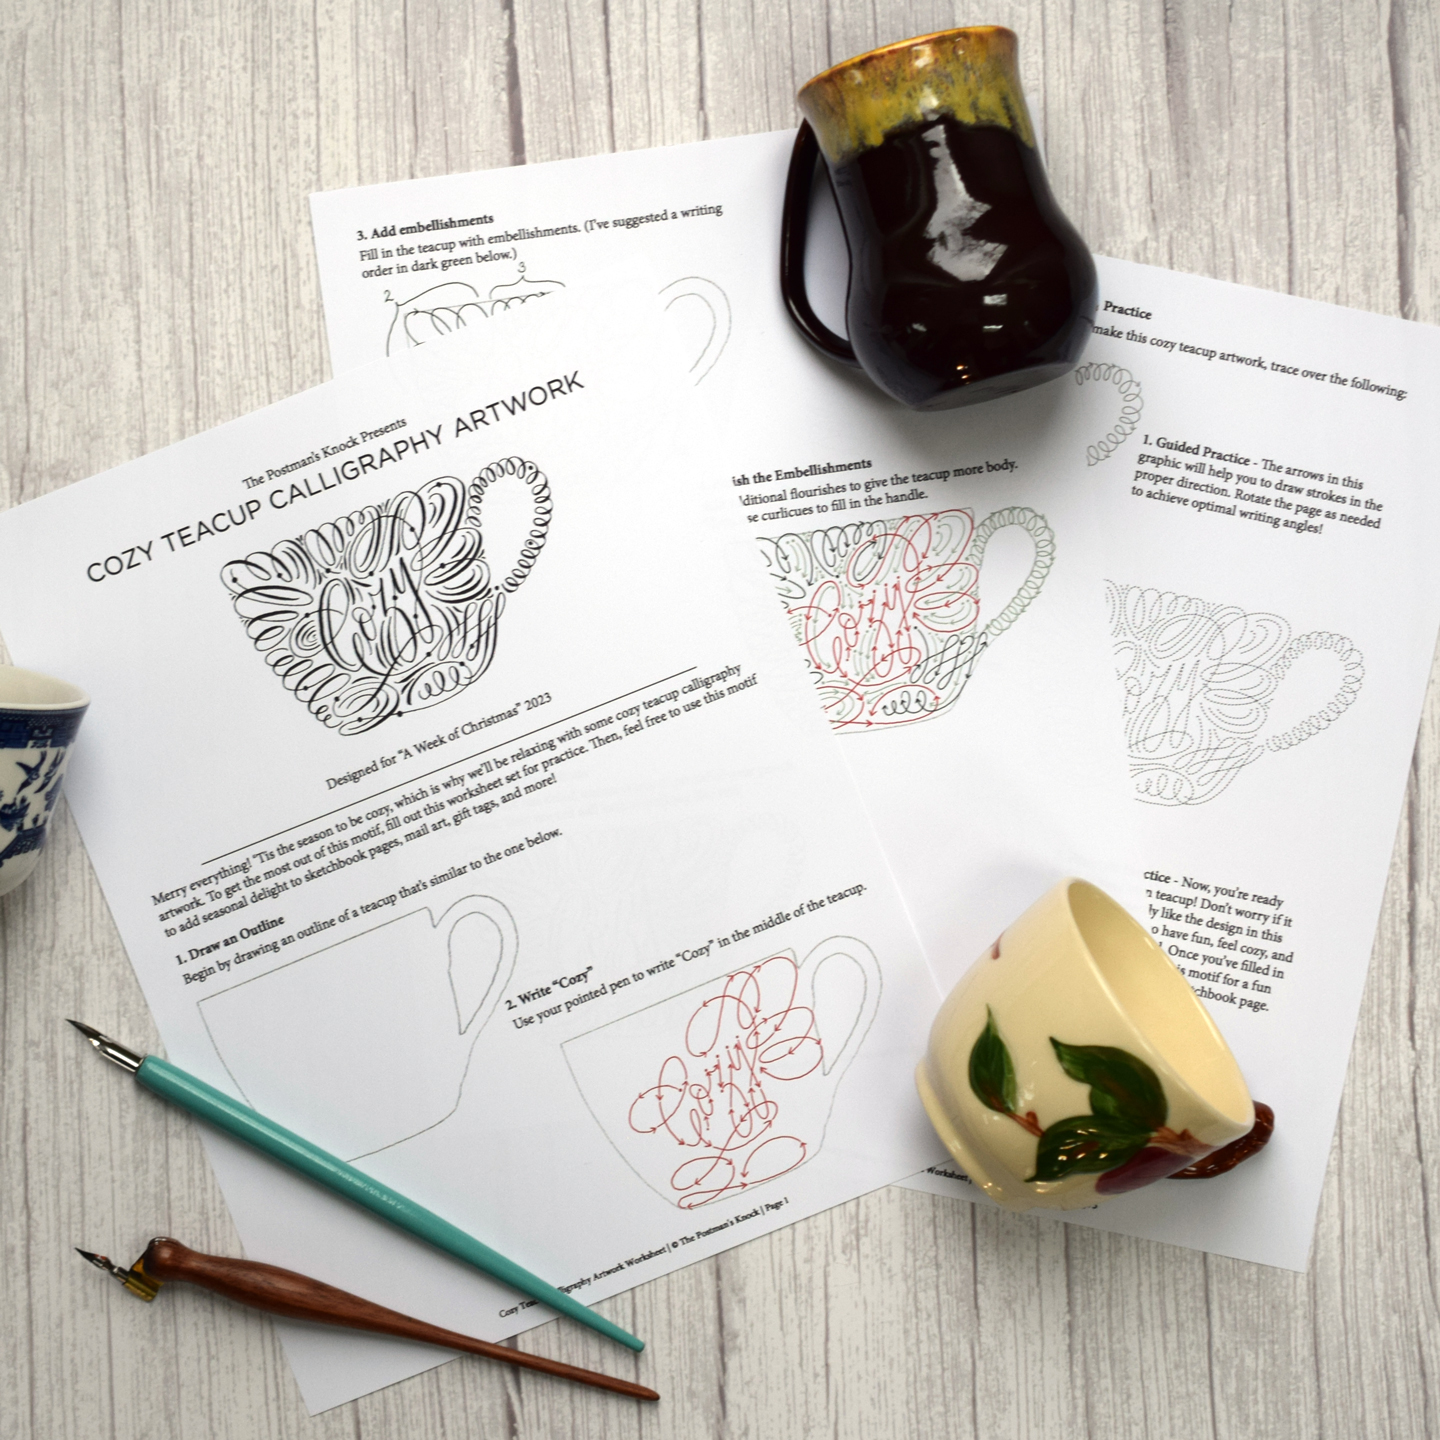 Cozy Teacup Calligraphy Artwork Worksheet